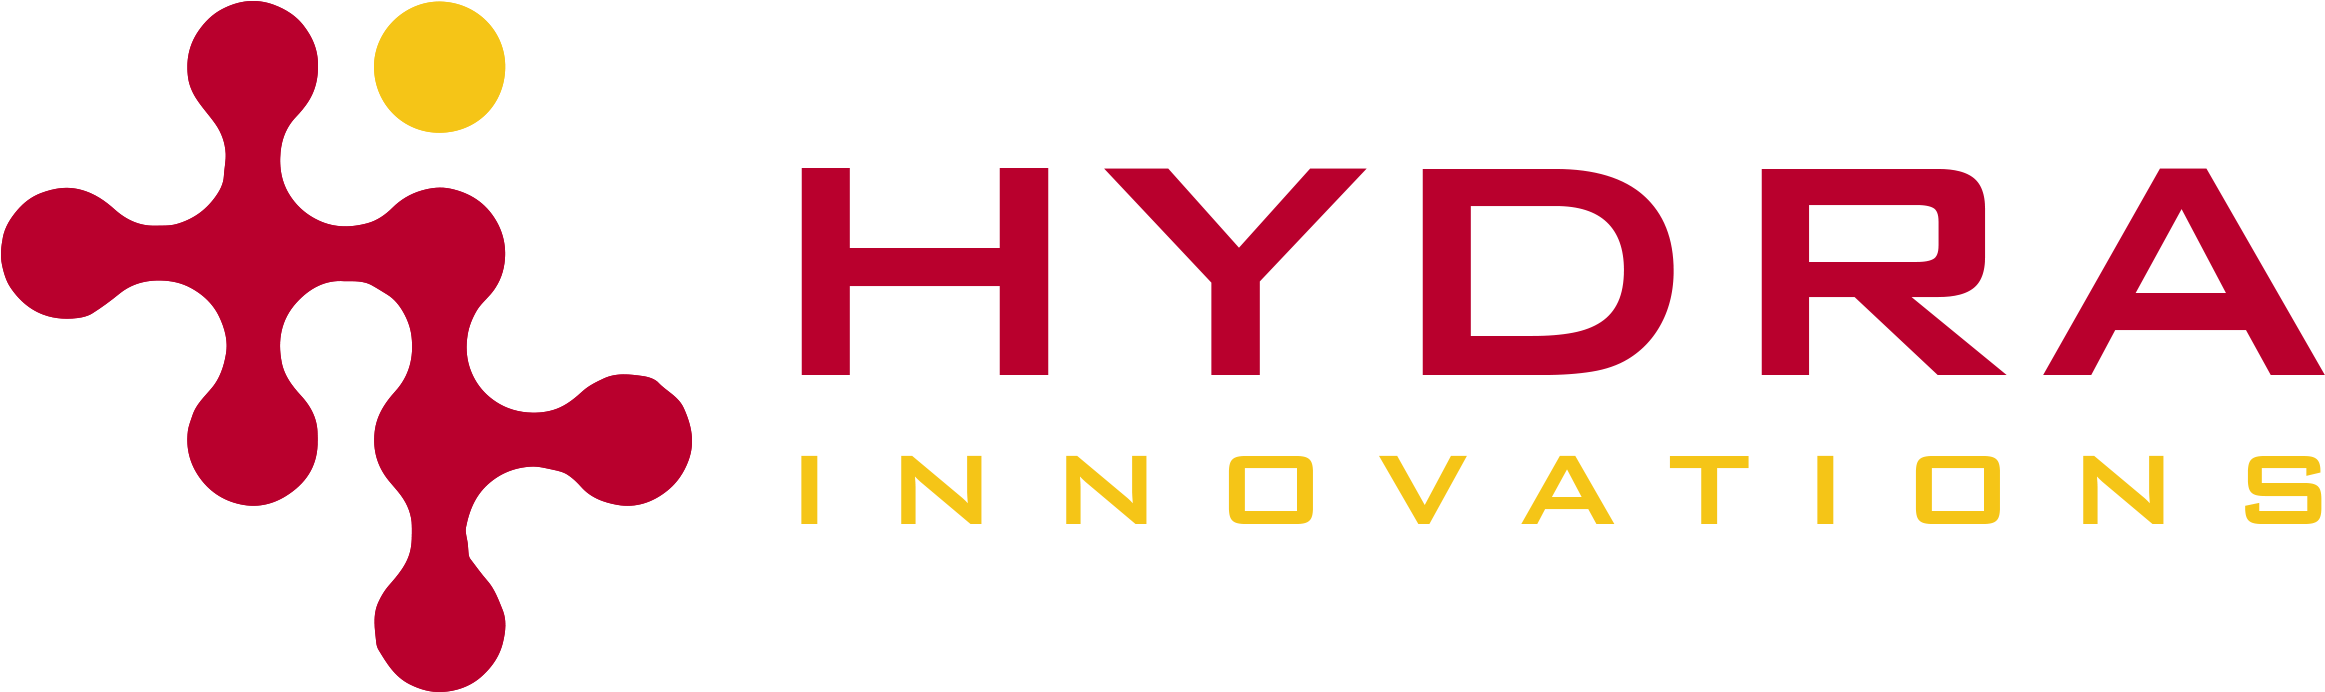 Imagem de alta qualidade do logotipo da Hydra PNG